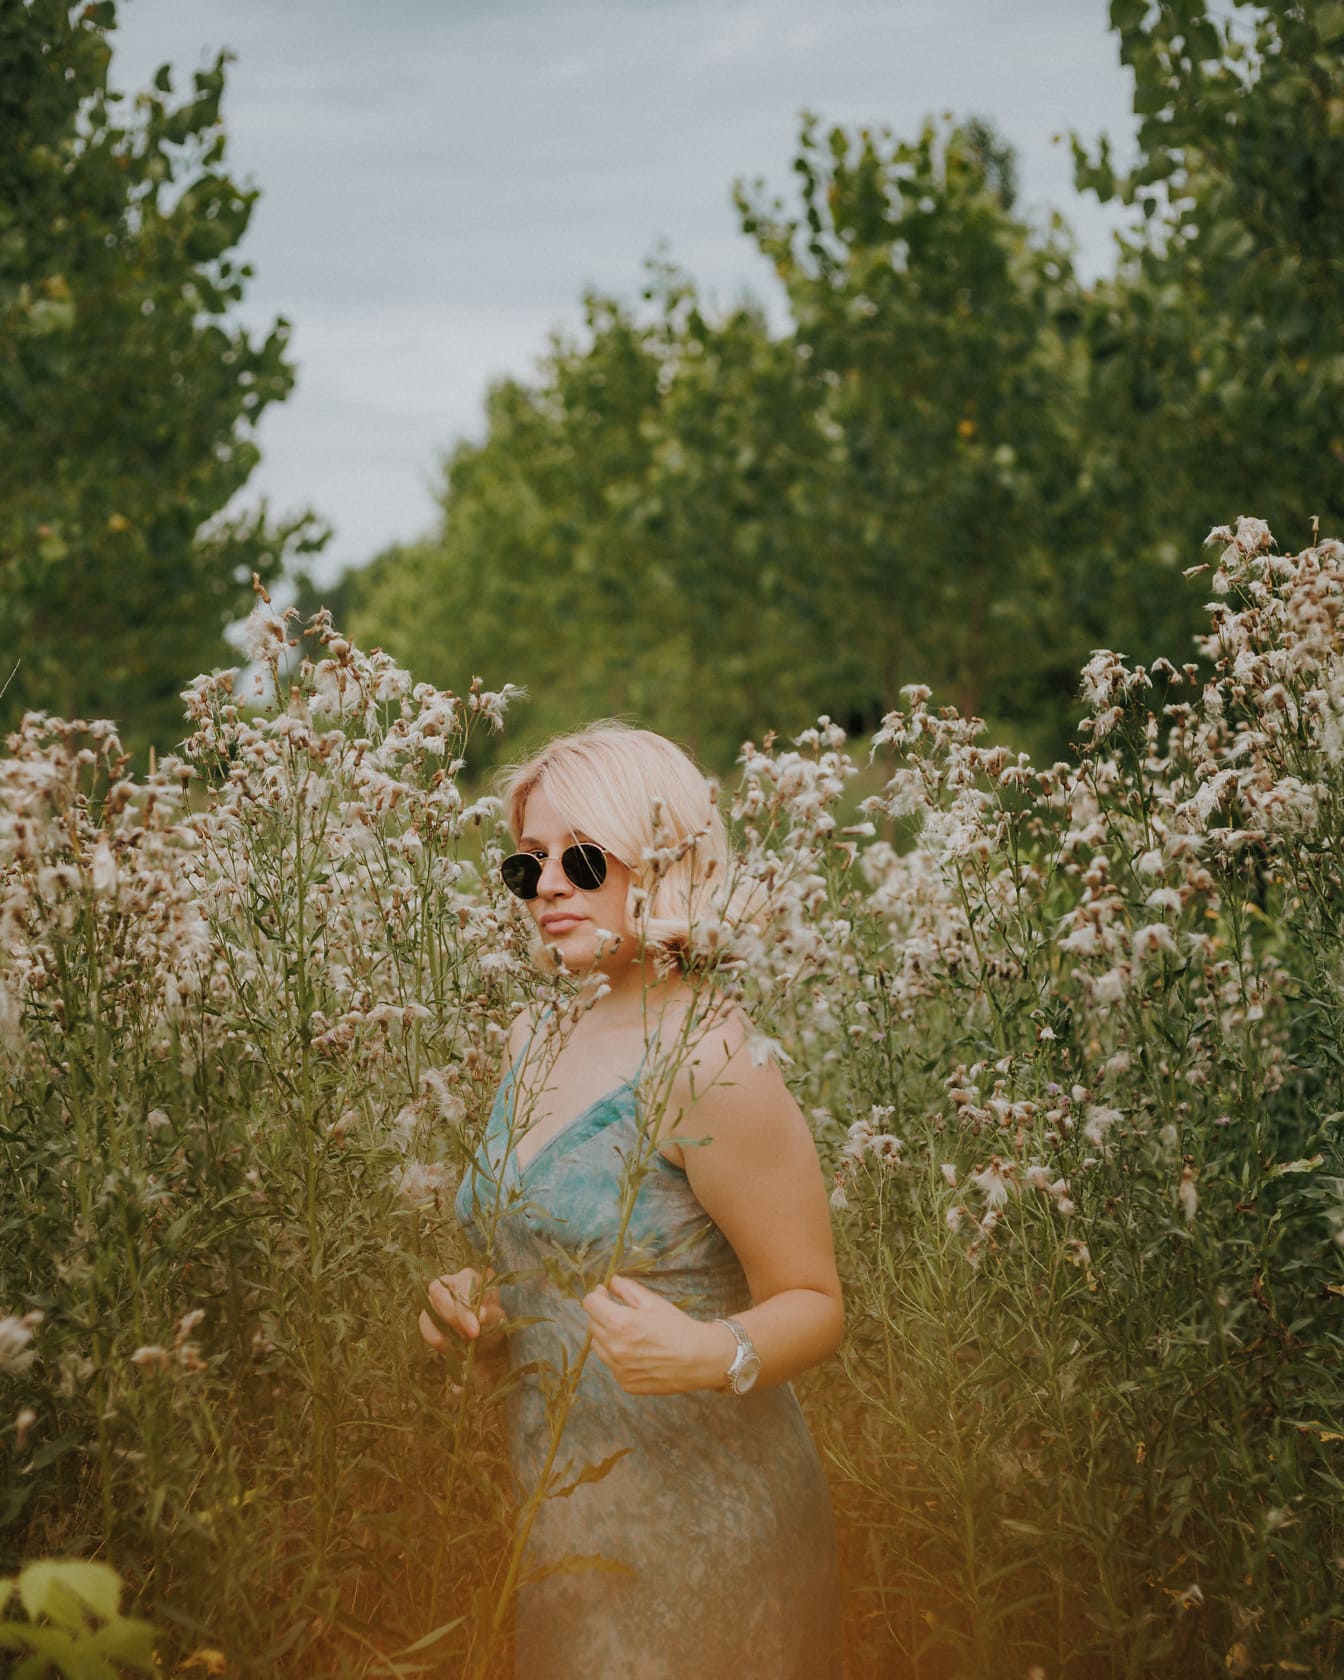 Magnifique blonde posant dans la prairie avec de l’herbe haute